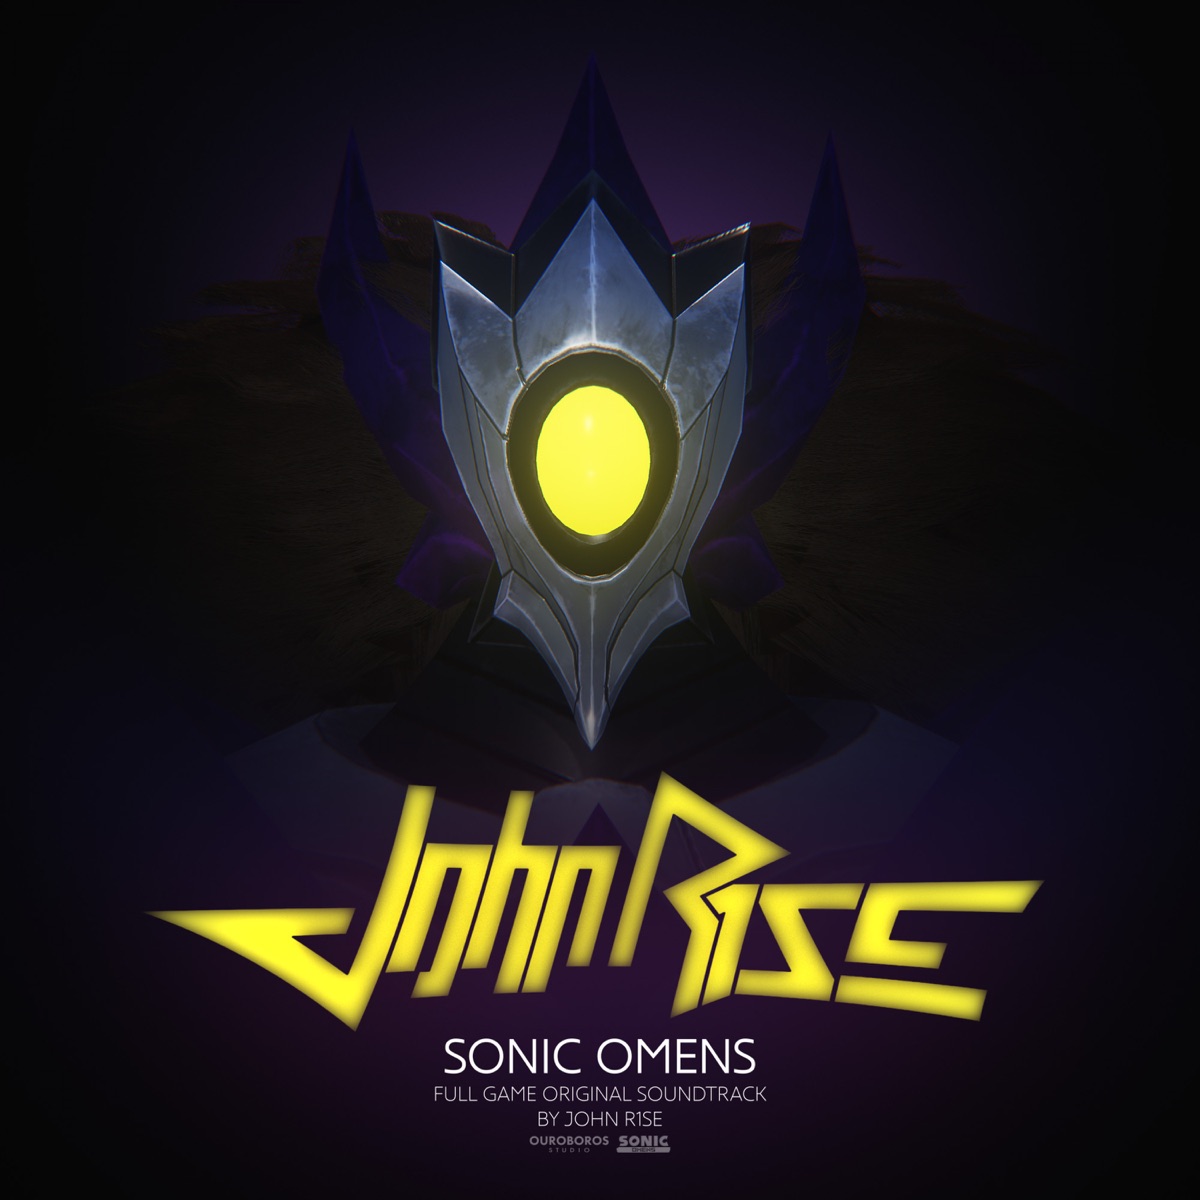 Sonic omens final. Sonic Omens. Sonic Omens Soundtrack. Sonic Omens обложка. Sonic Omens logo.